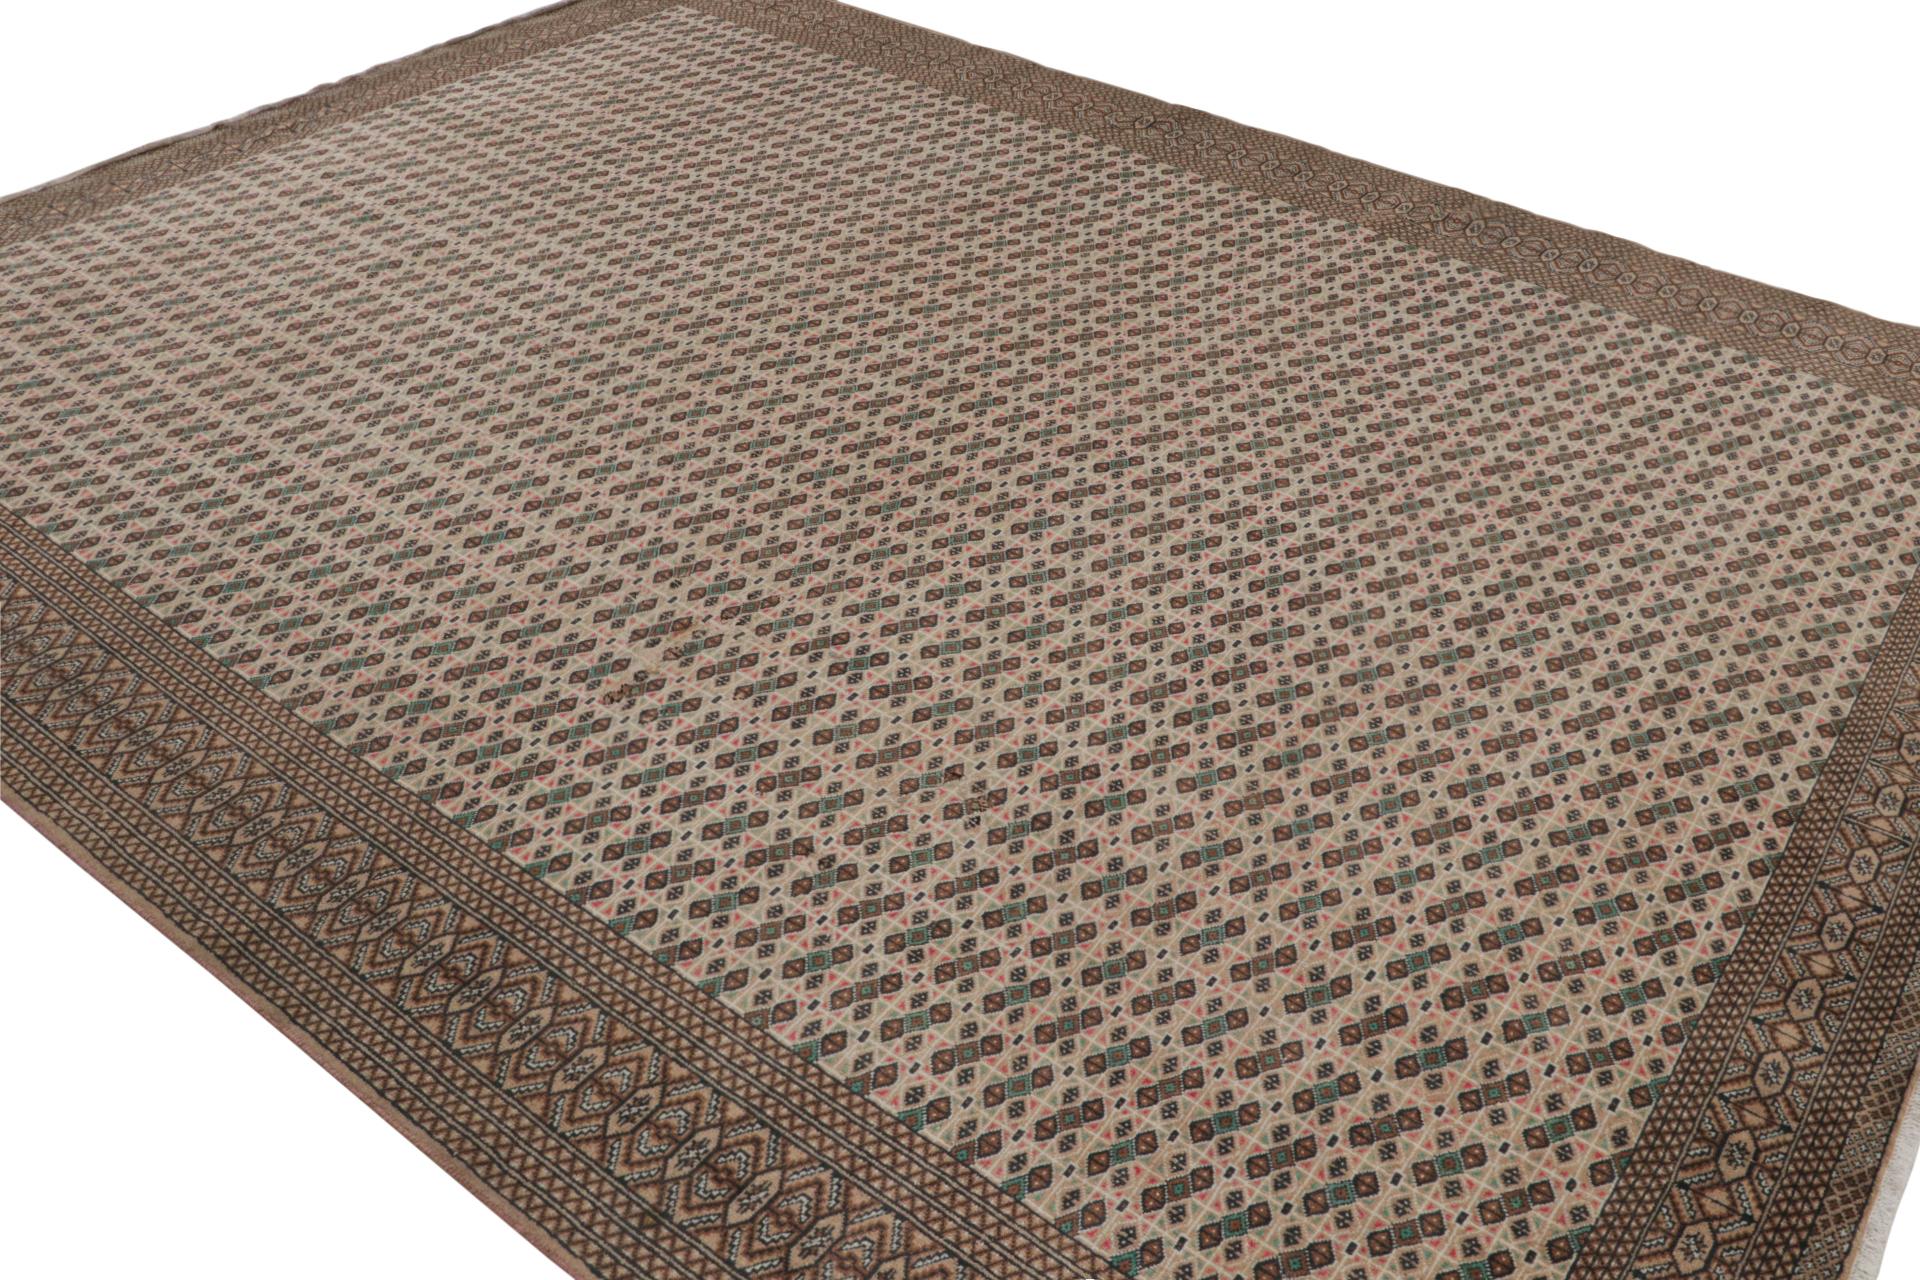 Aus unserer prestigeträchtigen Sammlung von Vintage-Teppichen, ein 10x12 Perserteppich aus der Zeit um 1970-1980.

Über das Design:

In dem Muster unterstreichen Beige-Braun und Grün geometrische Muster in einem bequemen Rapport aus Rauten und